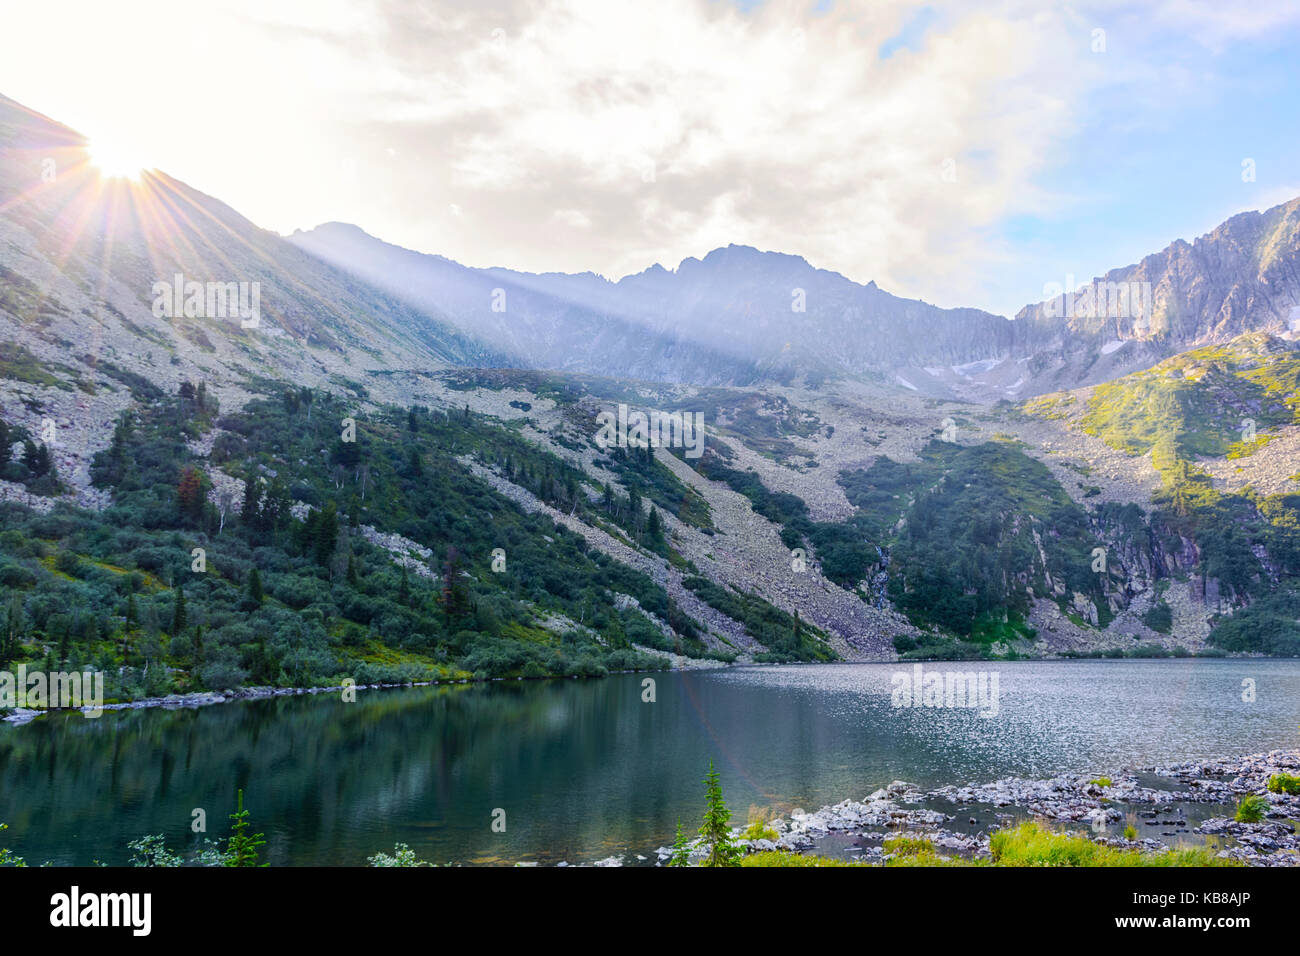 Lac de montagne magnifique paysage avec des rayons de soleil d'été. vue panoramique sur podnebesnye zubja (montagnes alatau kouznetsk) Banque D'Images